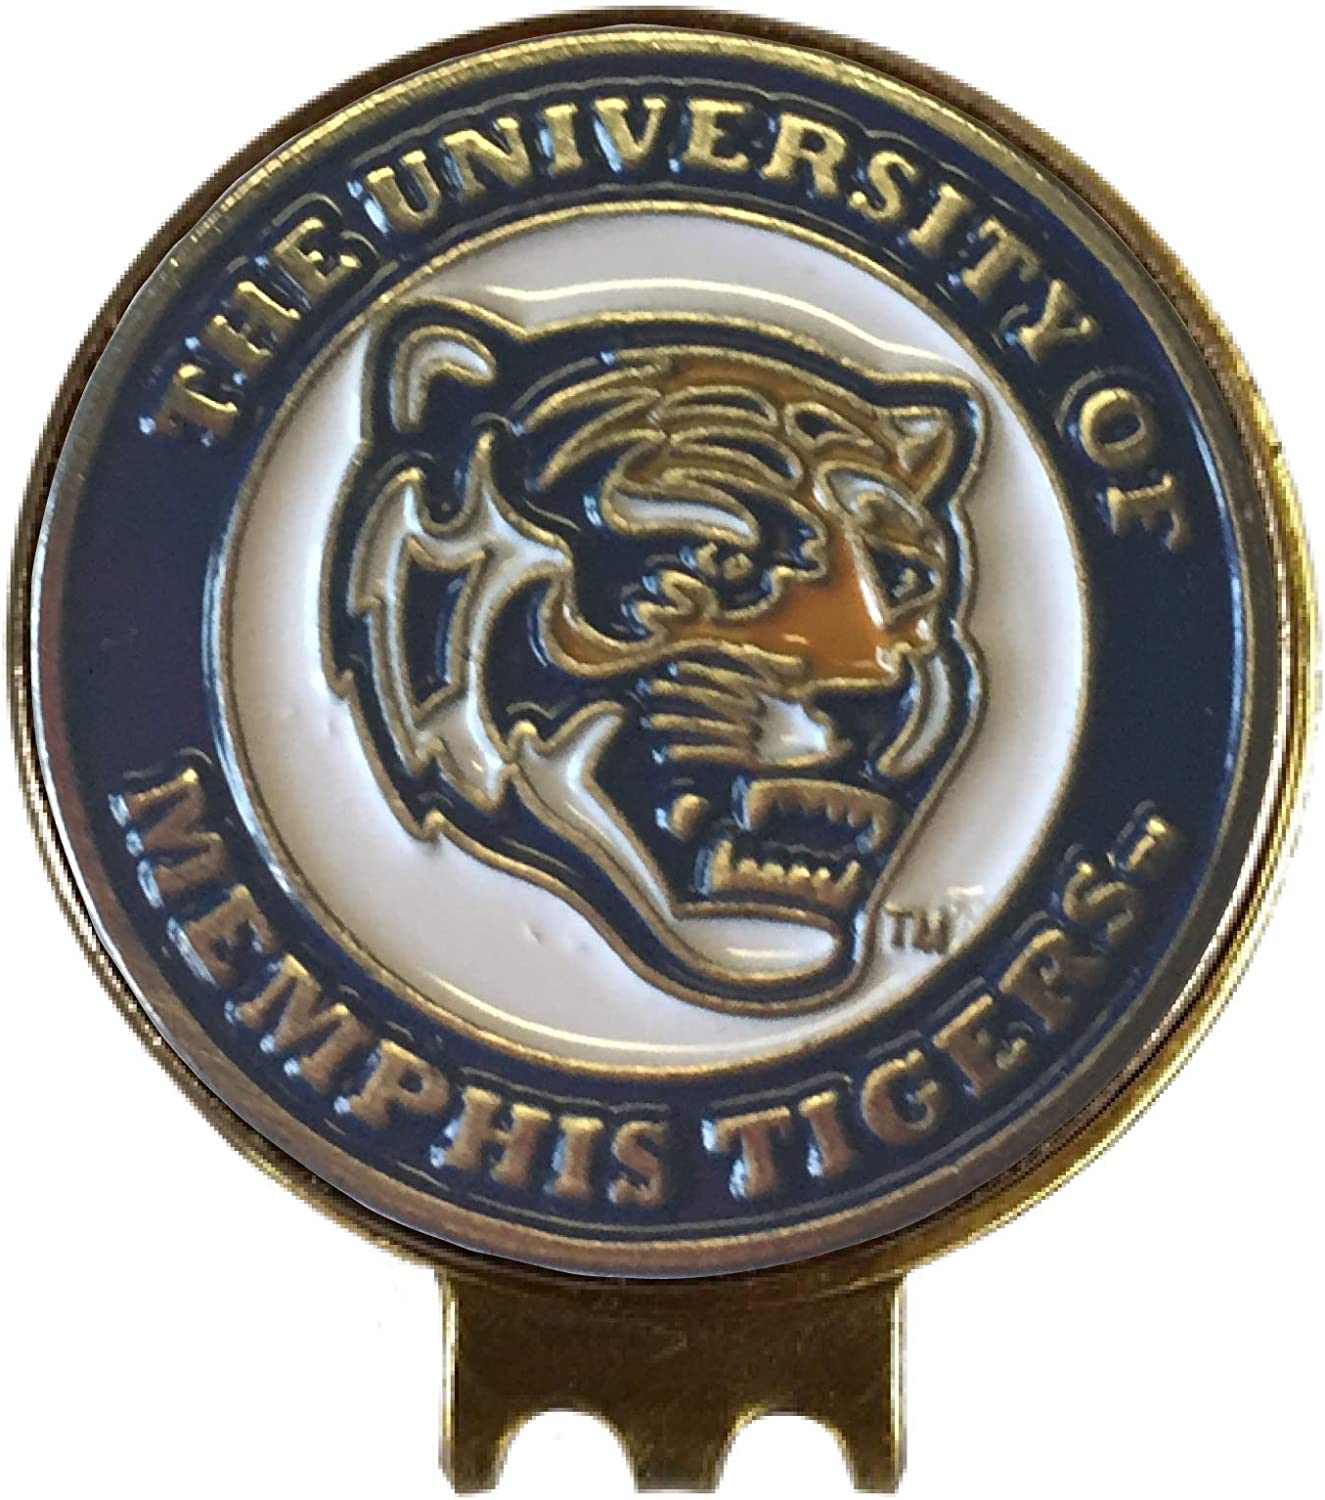 NCAA Golf Hat Clip (Memphis Tigers)